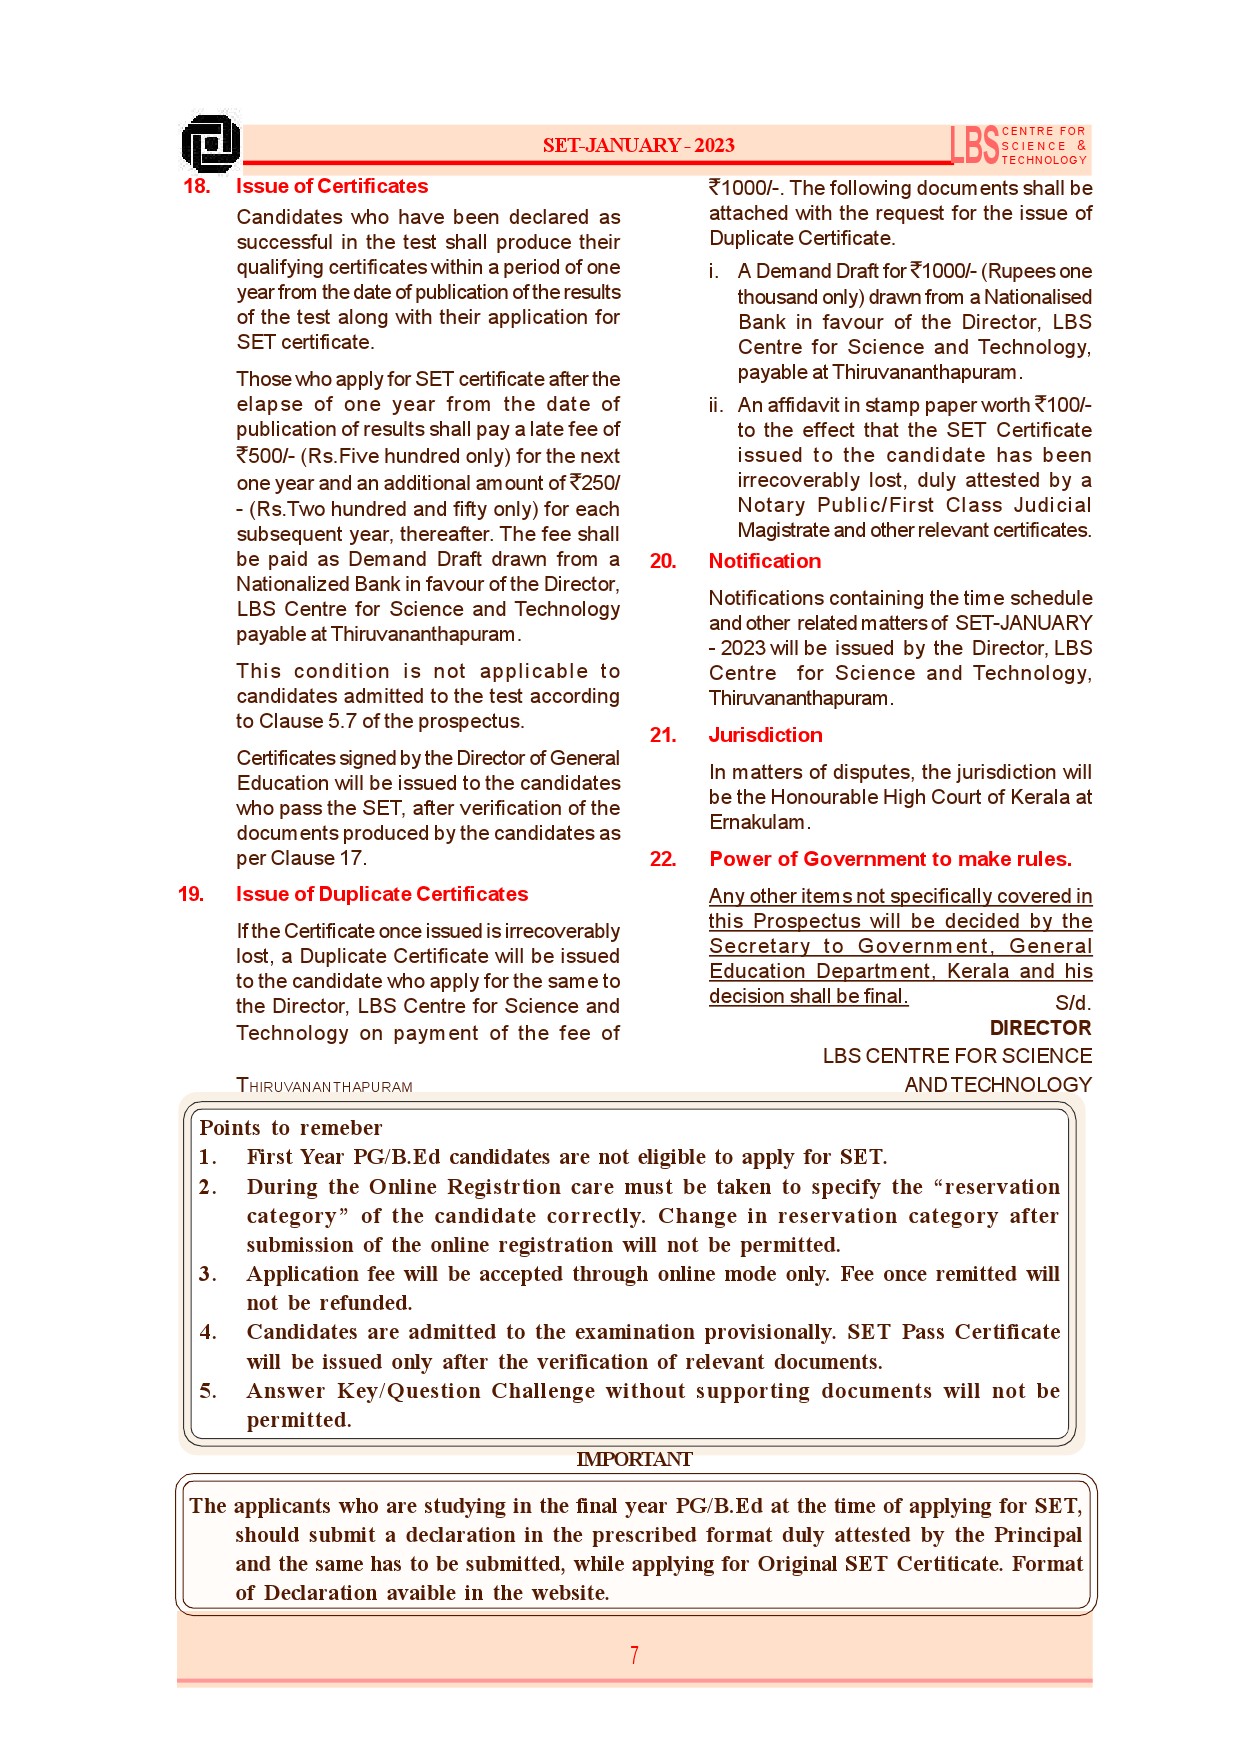 State Eligibility Test January 2023 Prospectus - Notification Image 9